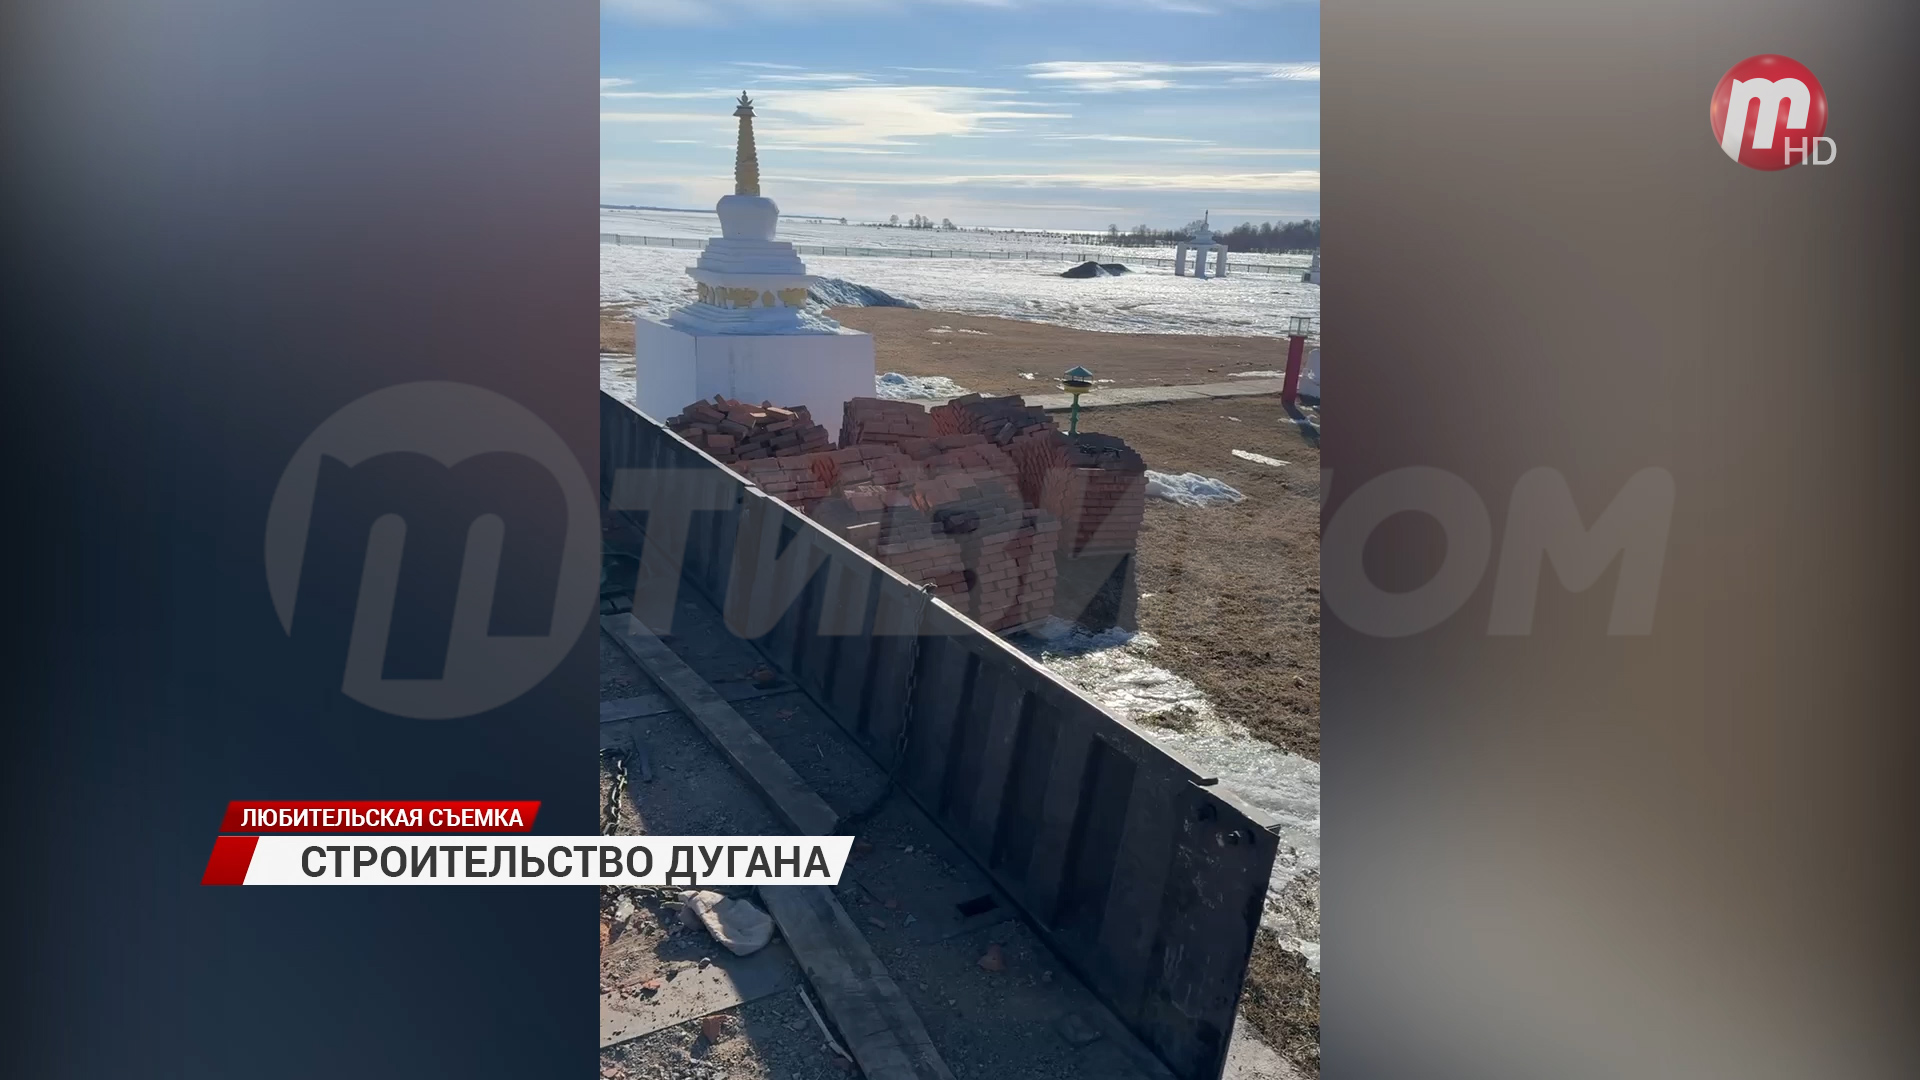 В Байкальском дацане началось строительство «Согчен дугана»